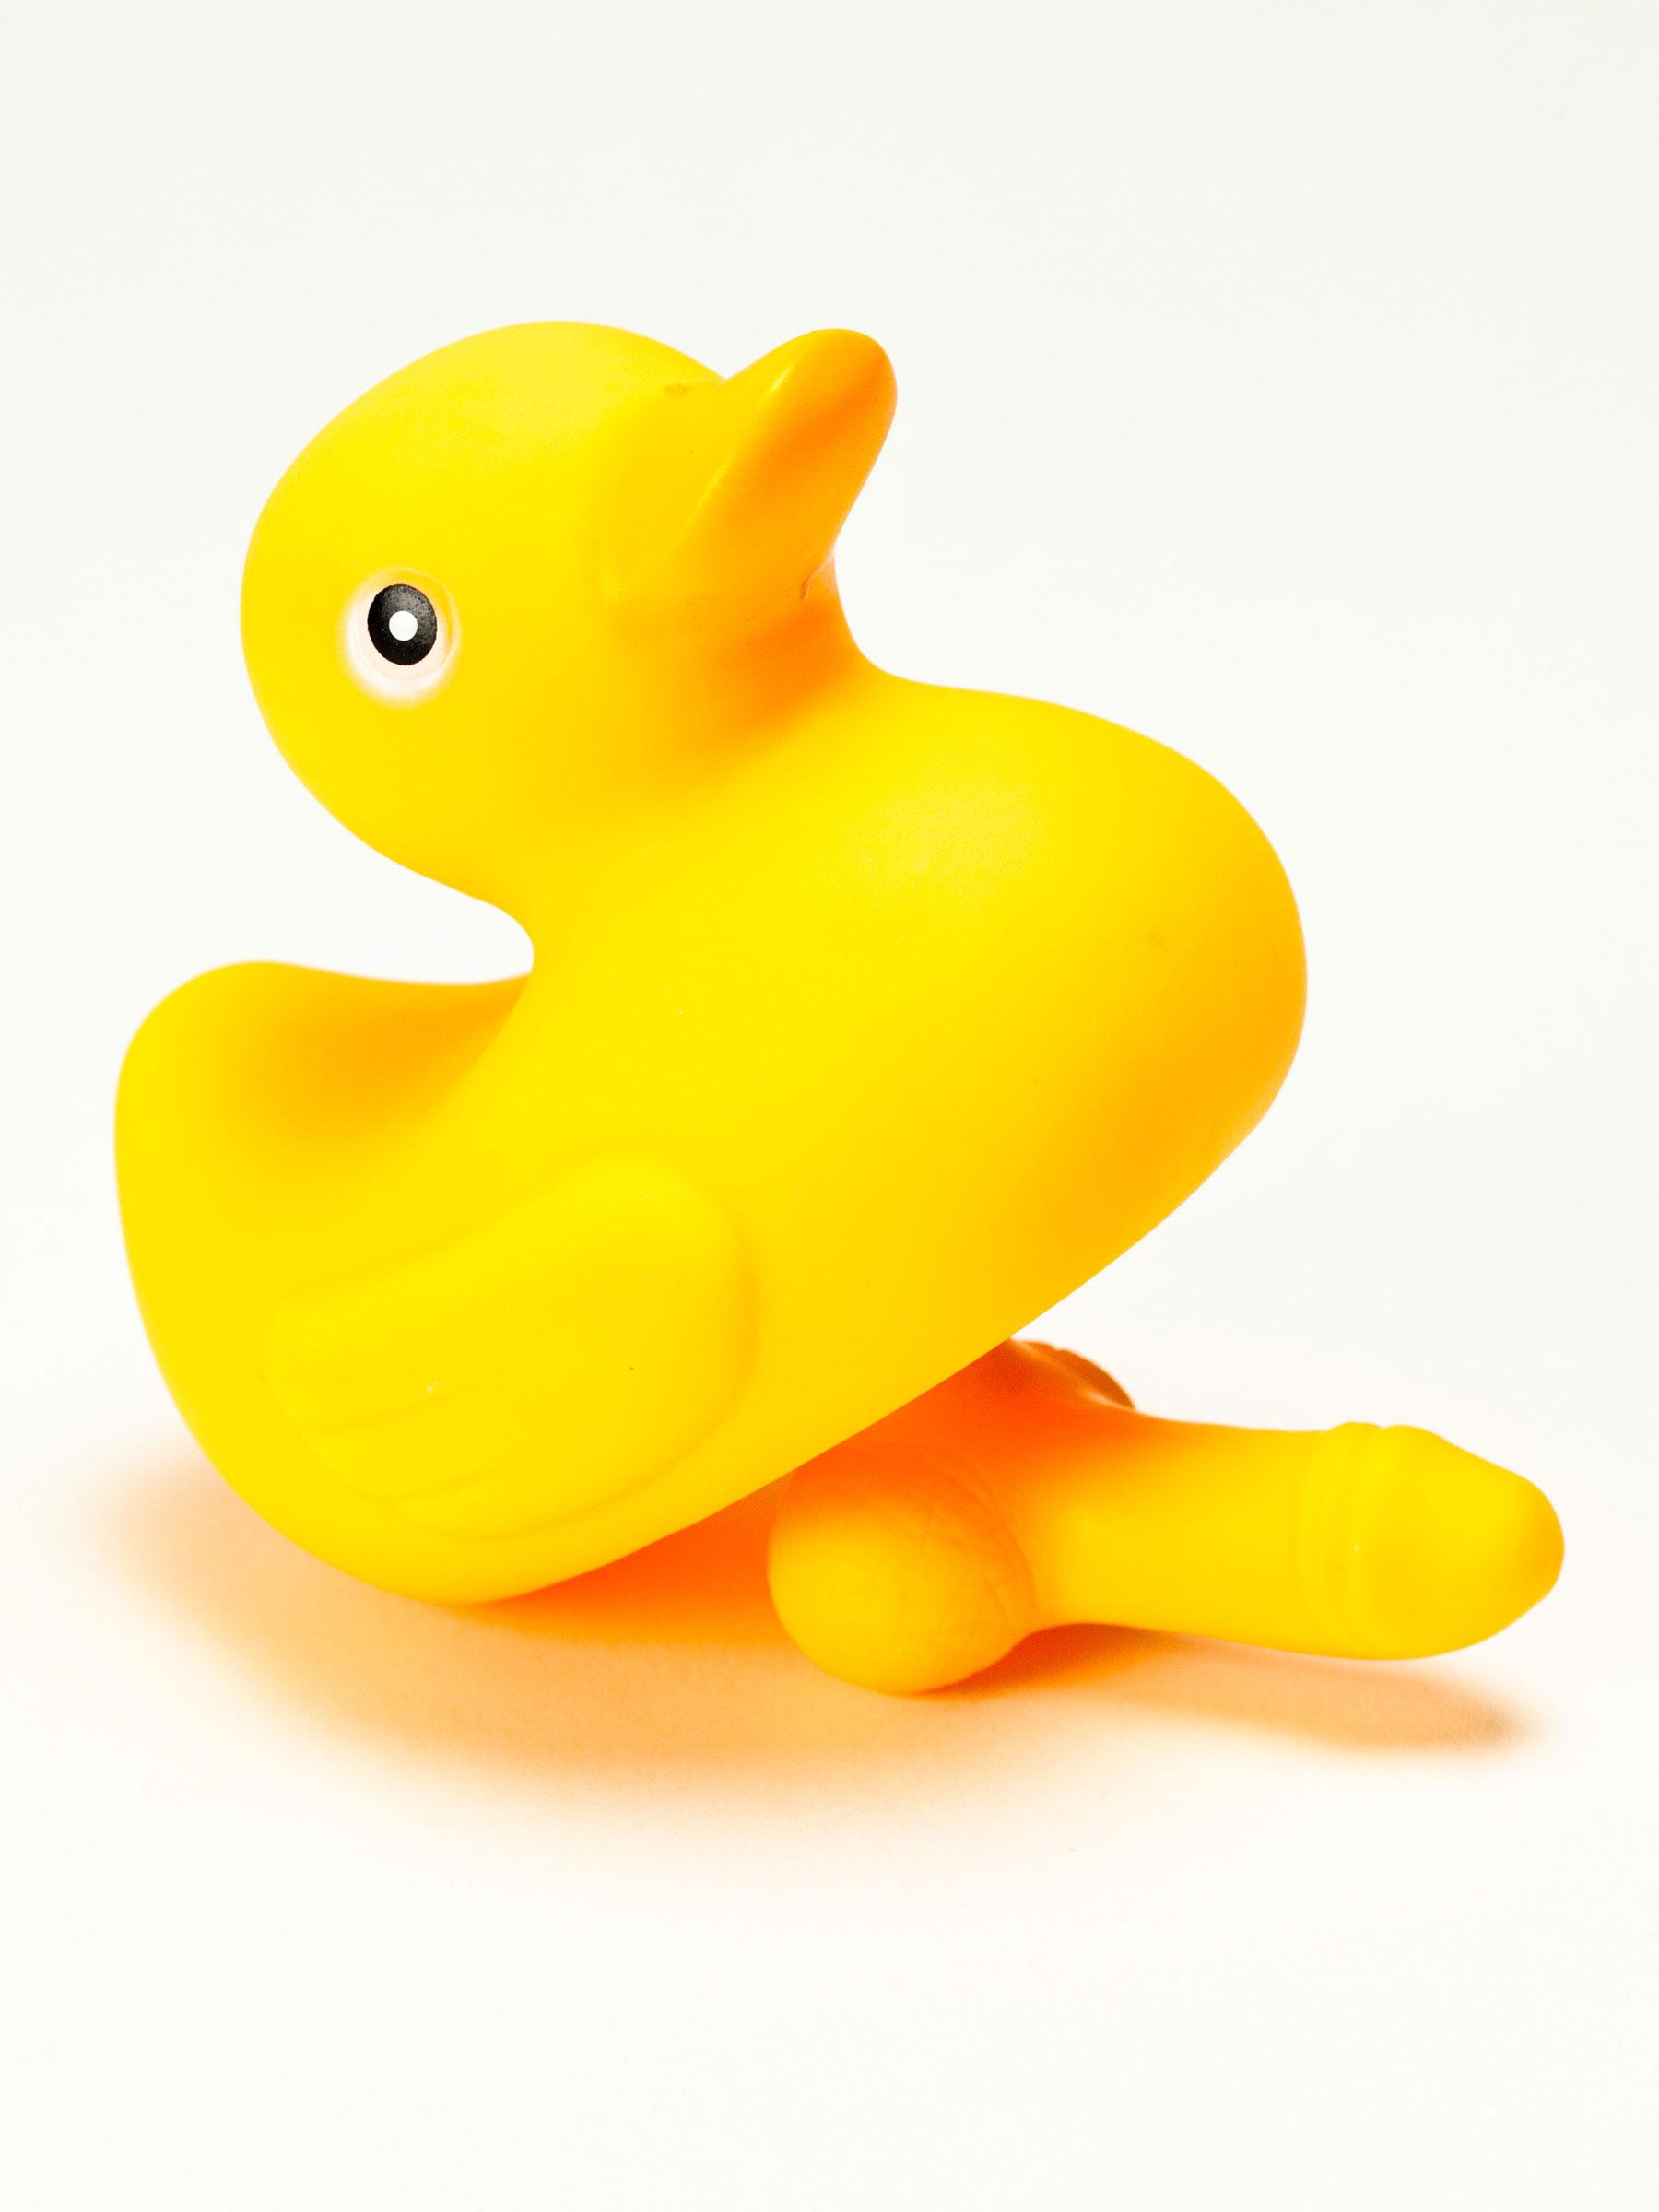 Dick duck duck dick